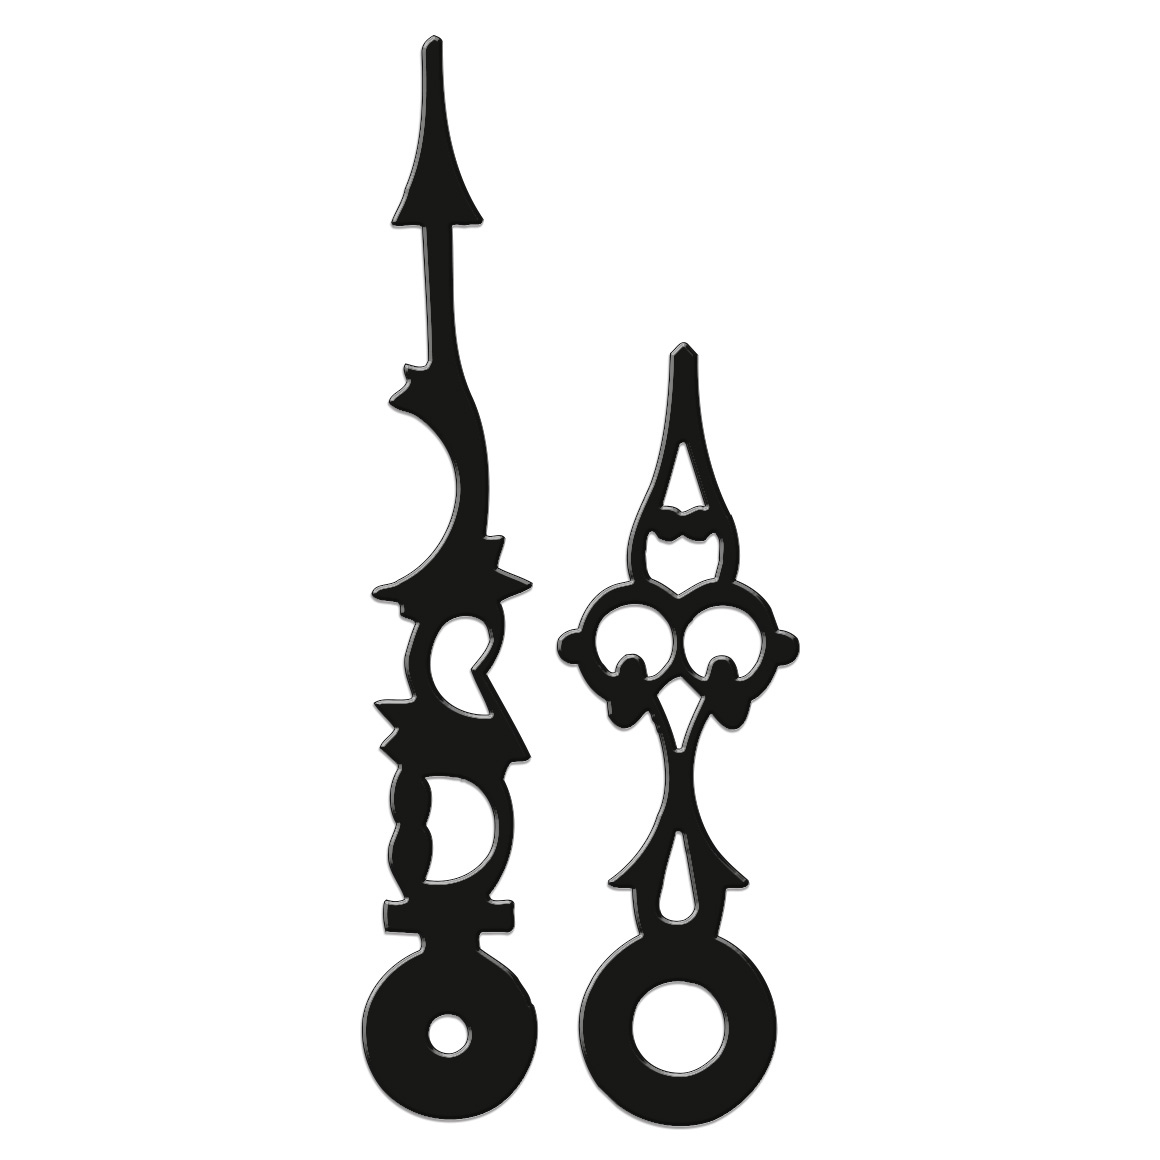 Zeigerpaar, antike form, L 76 mm, Alu schwarz, Euro-Lochung